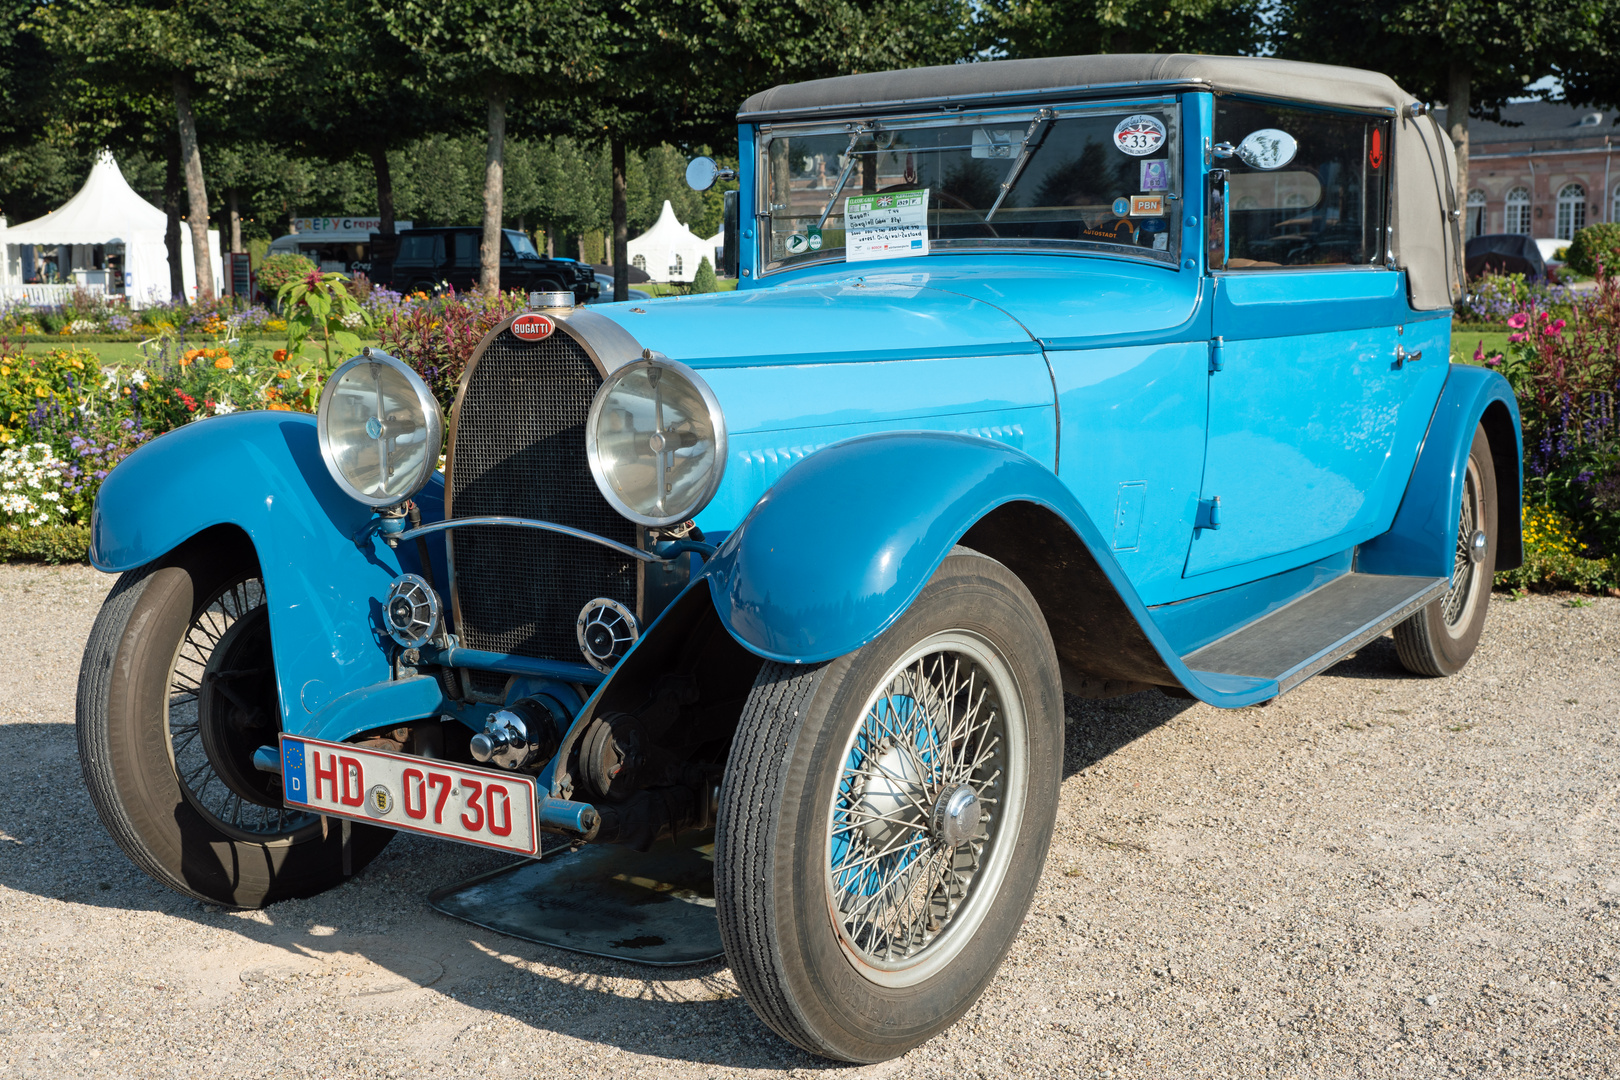 Montag / Blue Monday Bugatti T44, Bj. 1929, 8 Zyl.